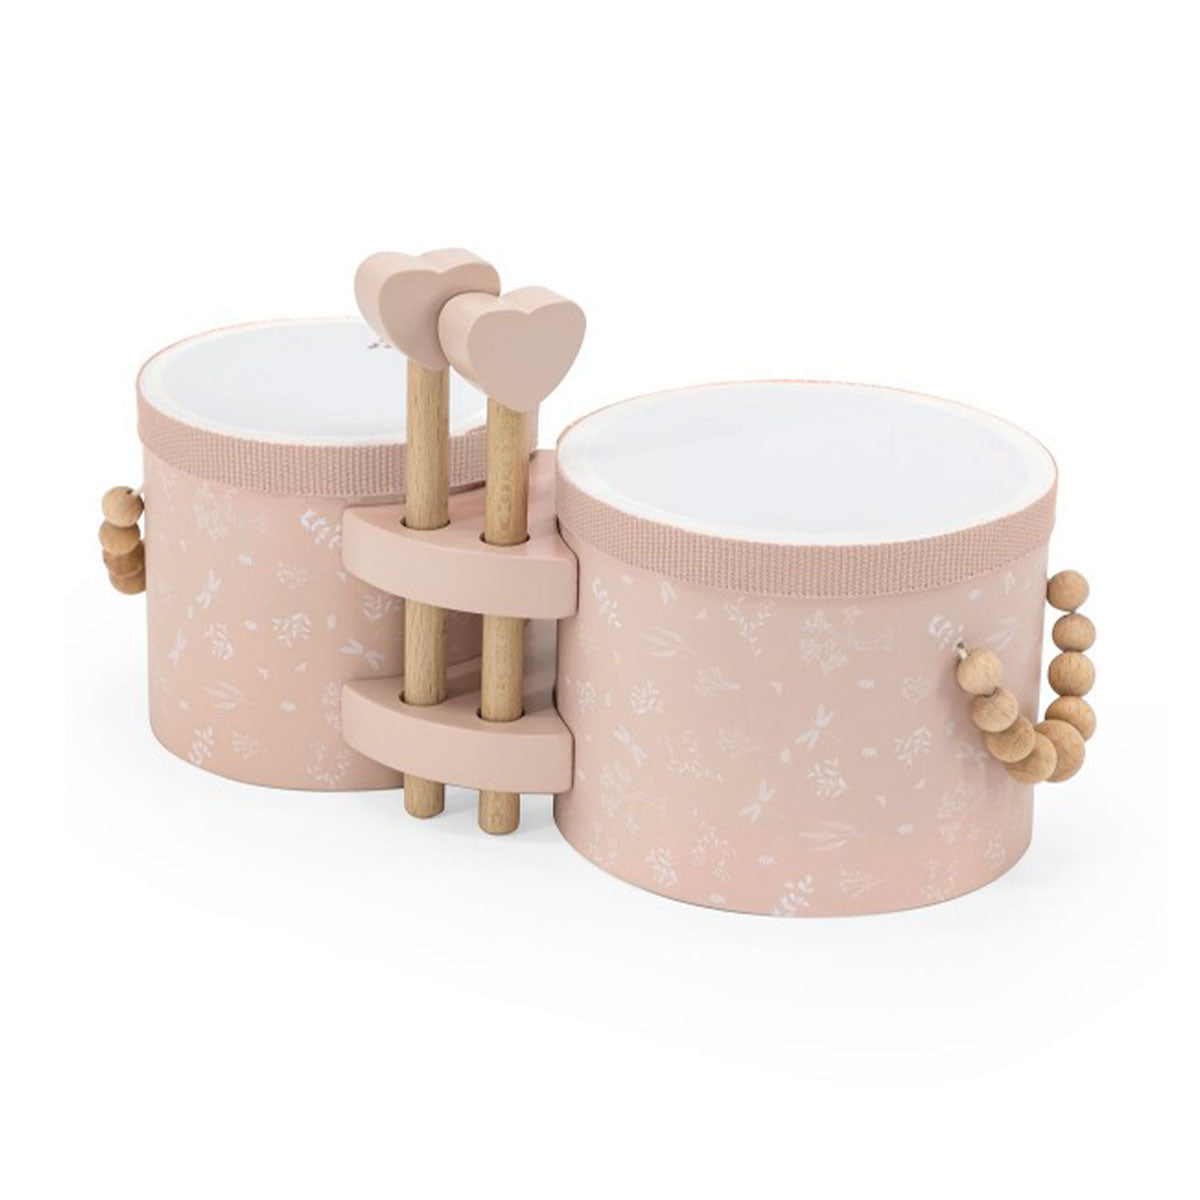 Laat je kindje kennis maken met muziek met deze fantastische houten bongo's in de kleur roze van het leuke merk Label Label. Deze prachtige bongo's zijn niet alleen leuk om mee te spelen, maar zien er ook fantastisch uit! VanZus